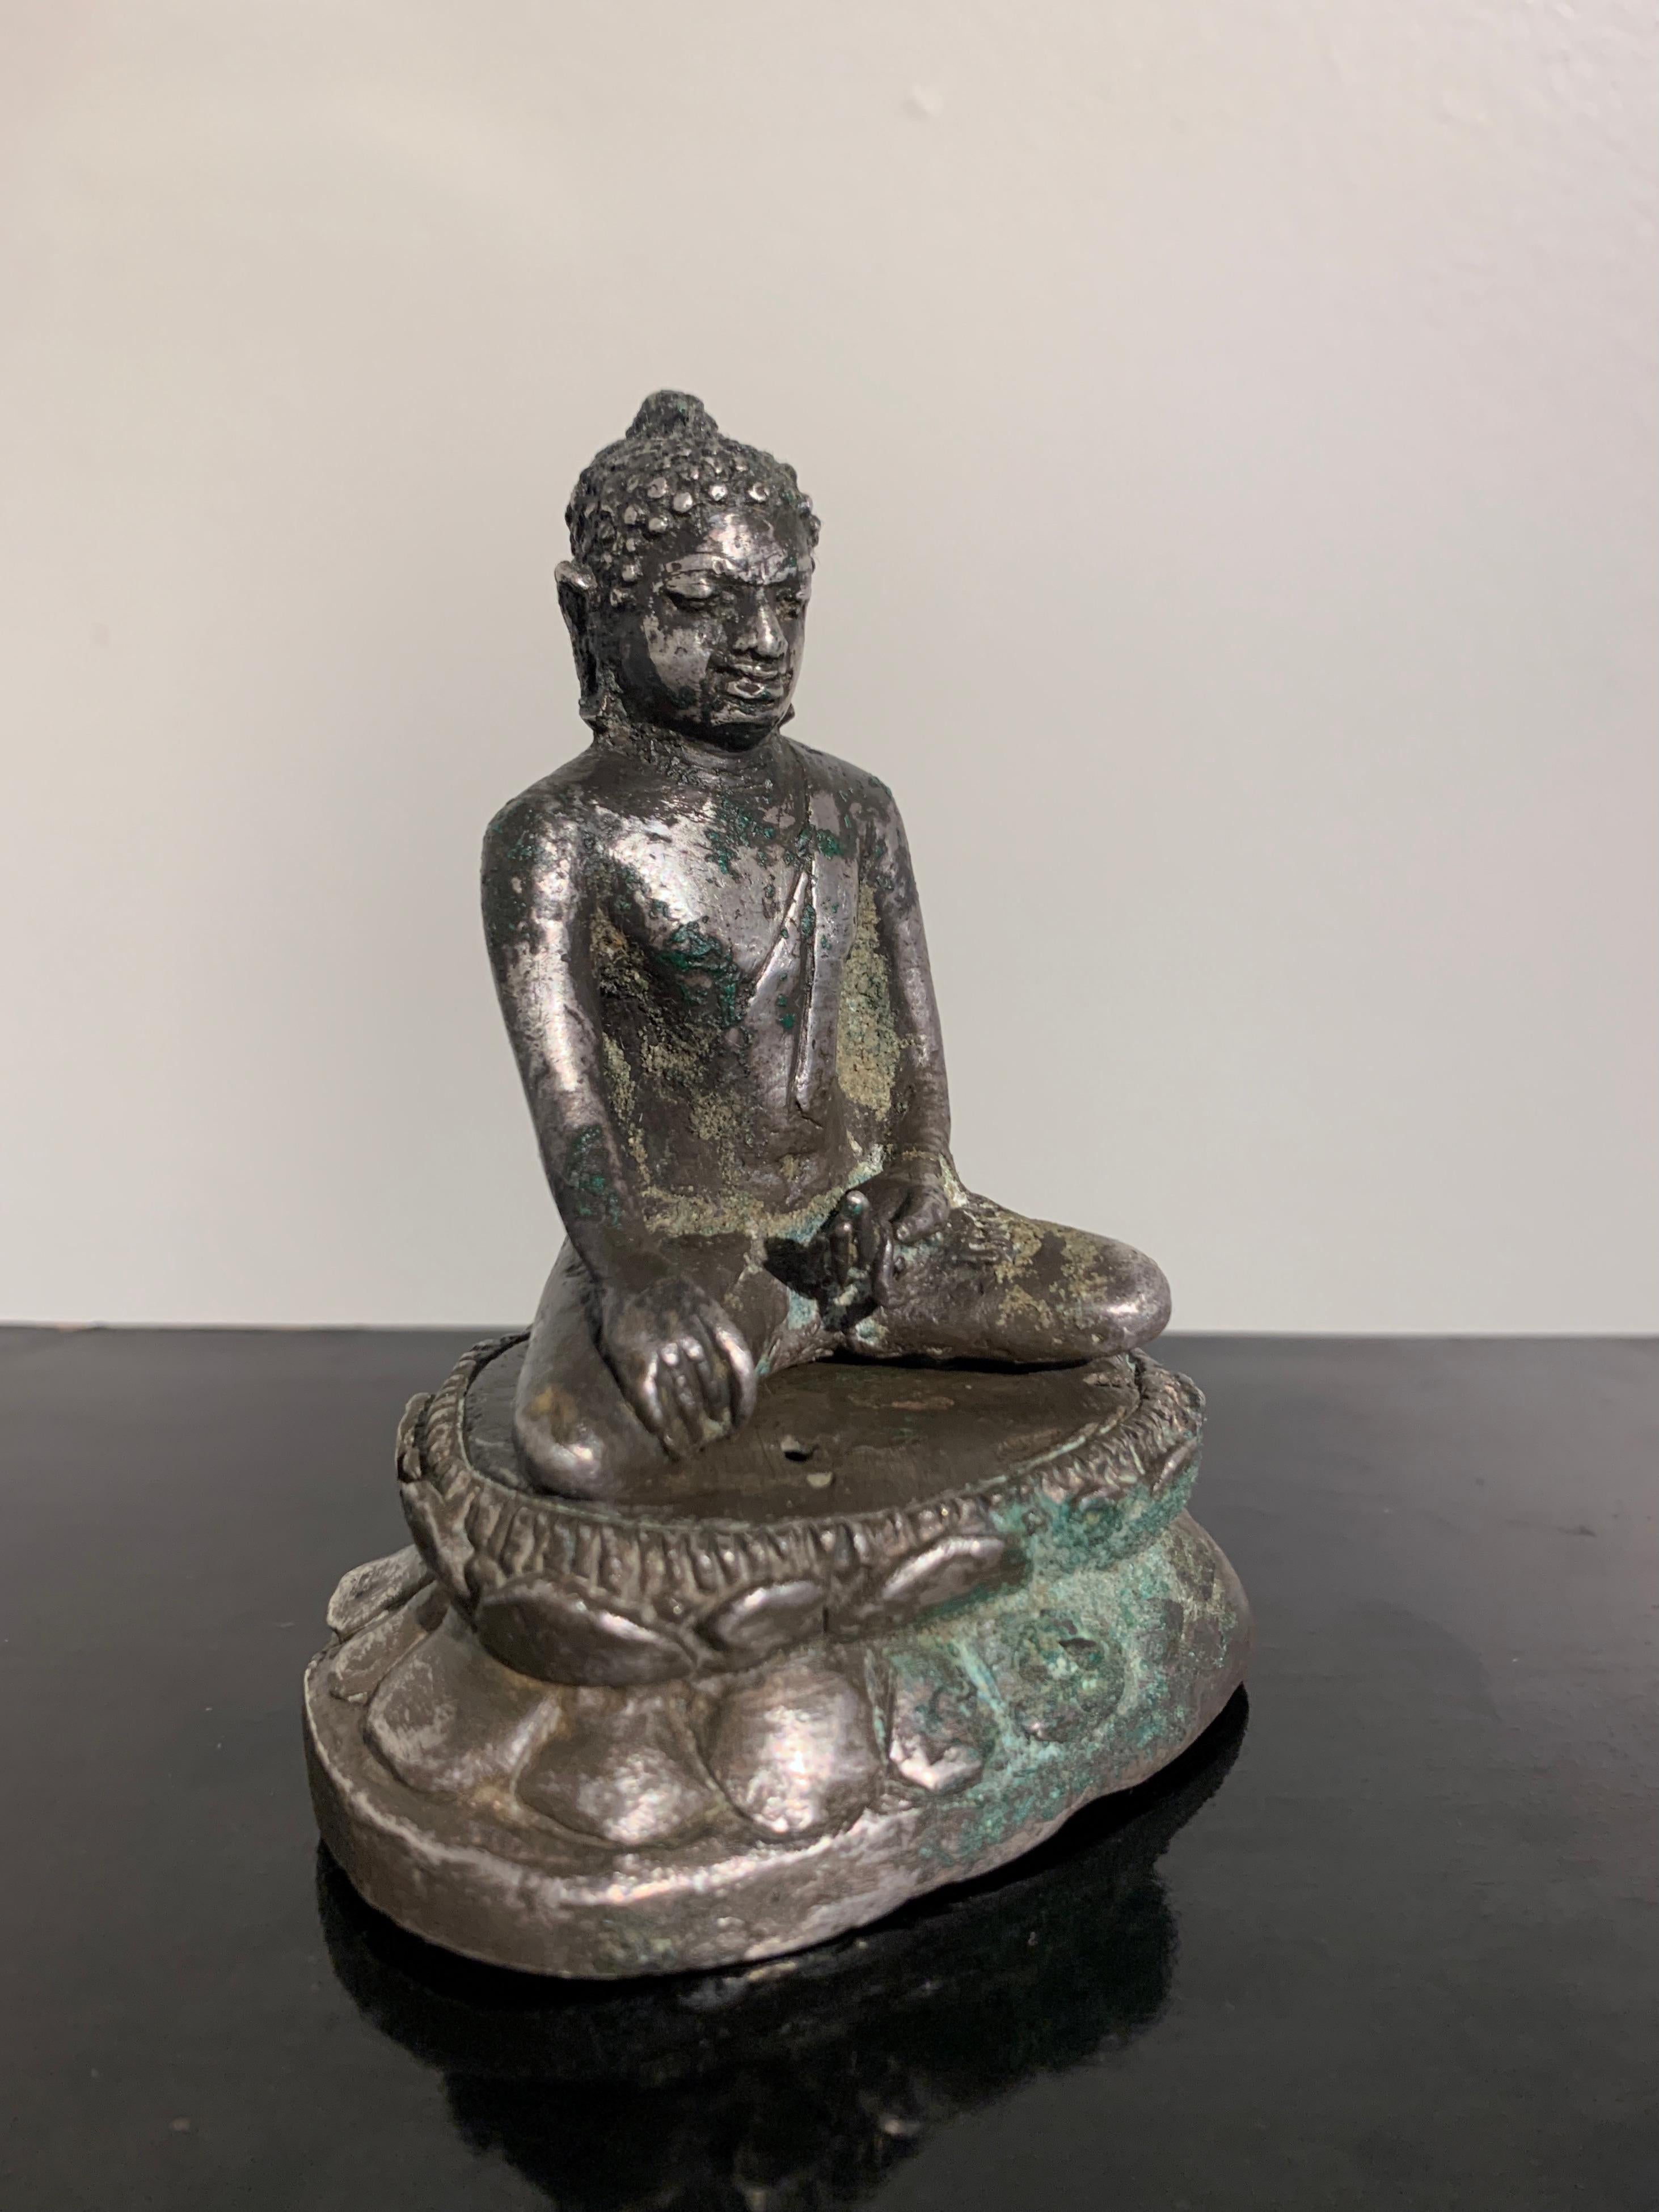 Très rare figure javanaise en argent coulé représentant un Bouddha transcendant, probablement le Dhayani Buddha Akshobhya, début de la période classique javanaise, 9e - 12e siècle, Java, Indonésie. 

Coulé en argent, le Bouddha ésotérique,